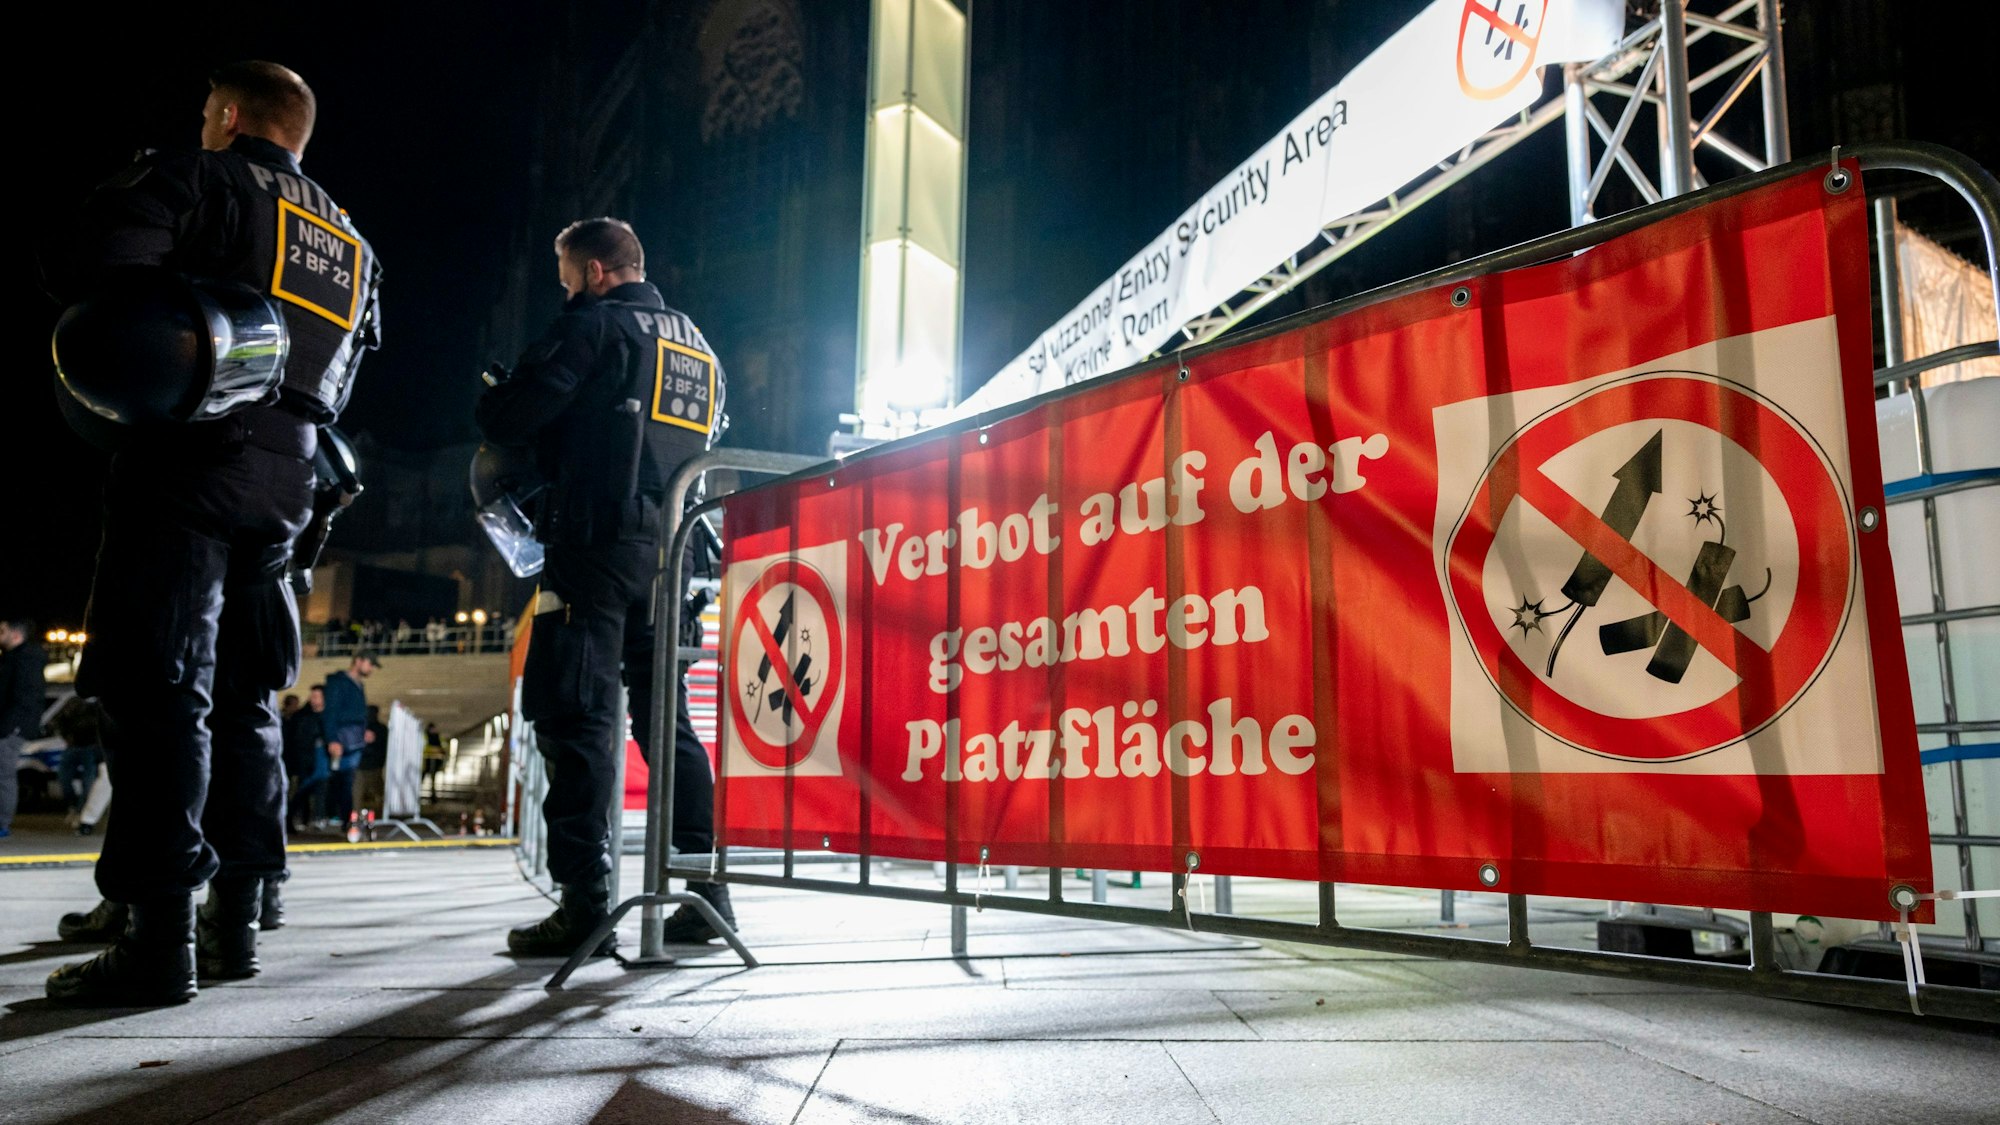 Zwei Polizisten vor einem Schild mit der Aufschrift „Verbot auf der gesamten Platzfläche“ und Böllersymbolen